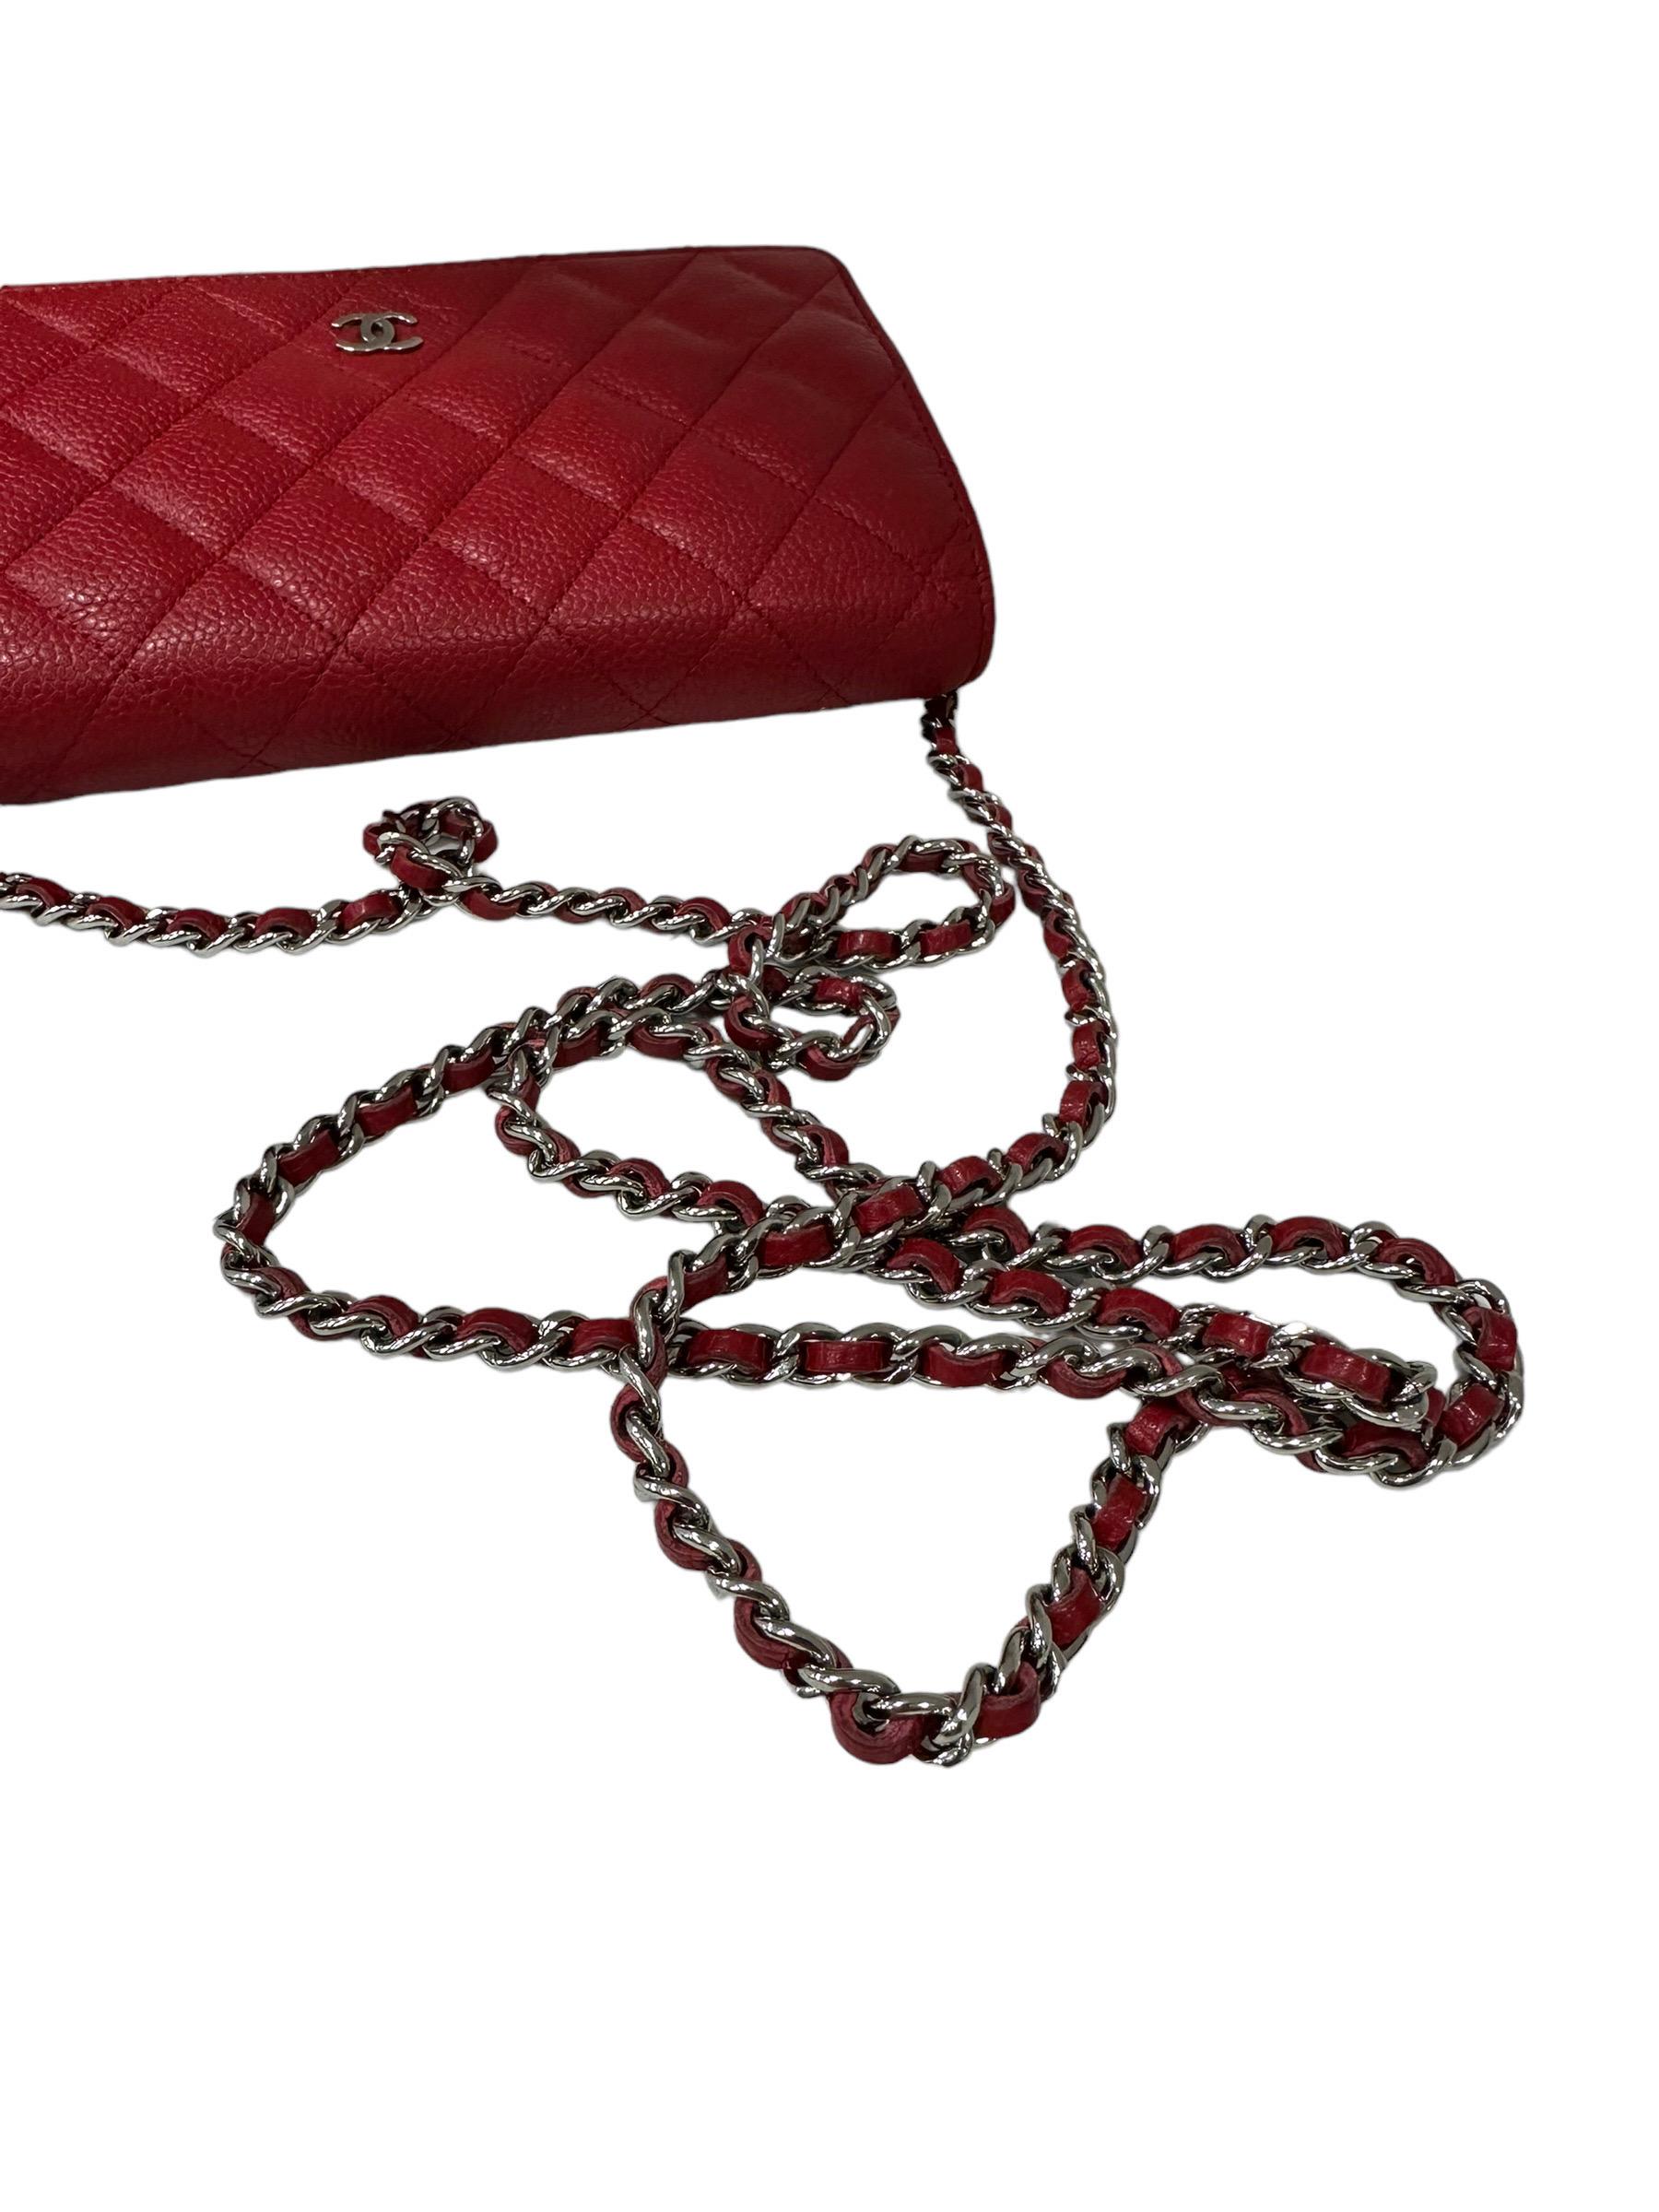 2013 Chanel Woc Caviar Red Crossbody Bag 7